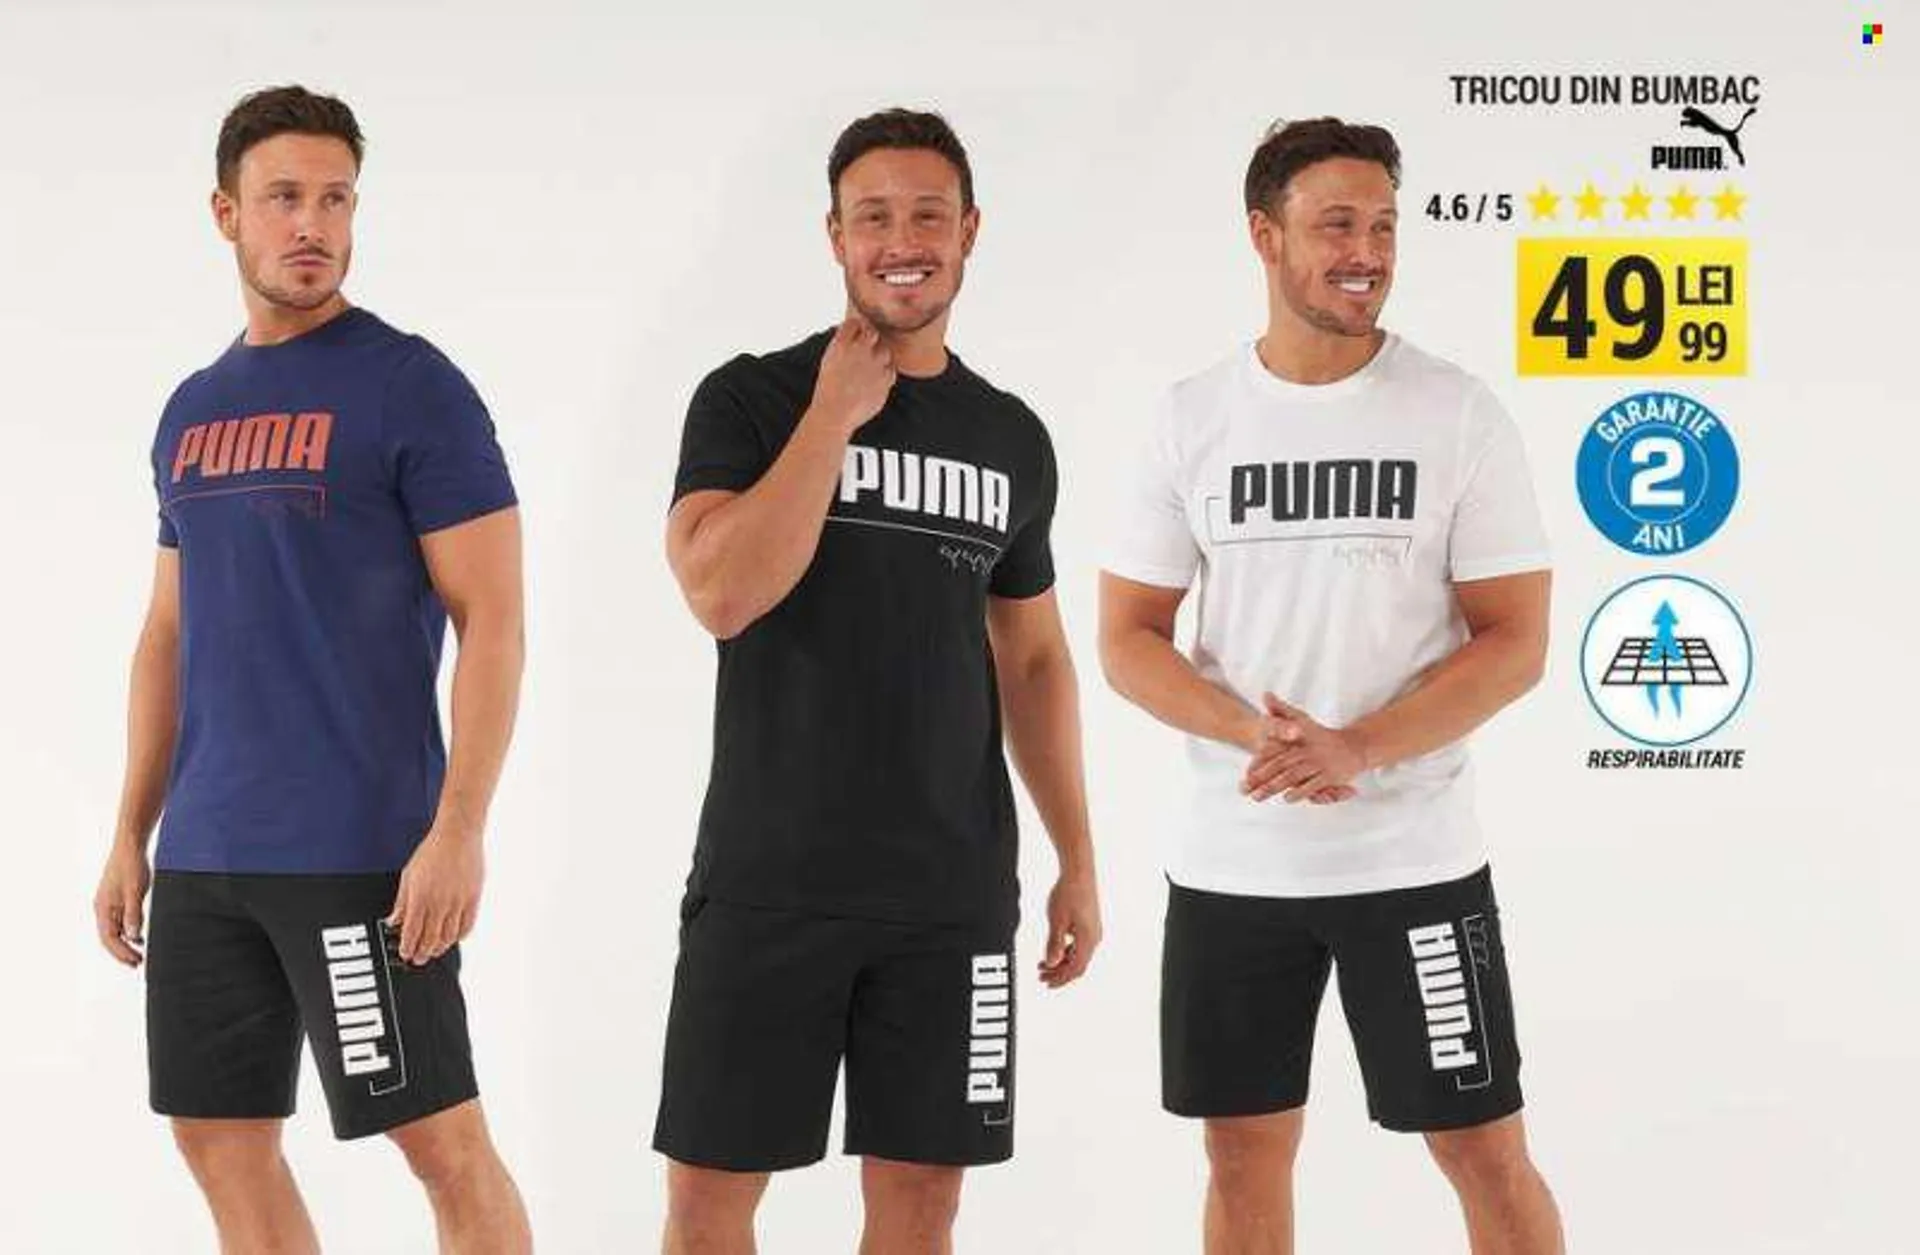 Cataloage Decathlon - Produse în vânzare - Puma, tricou. Pagina 3.